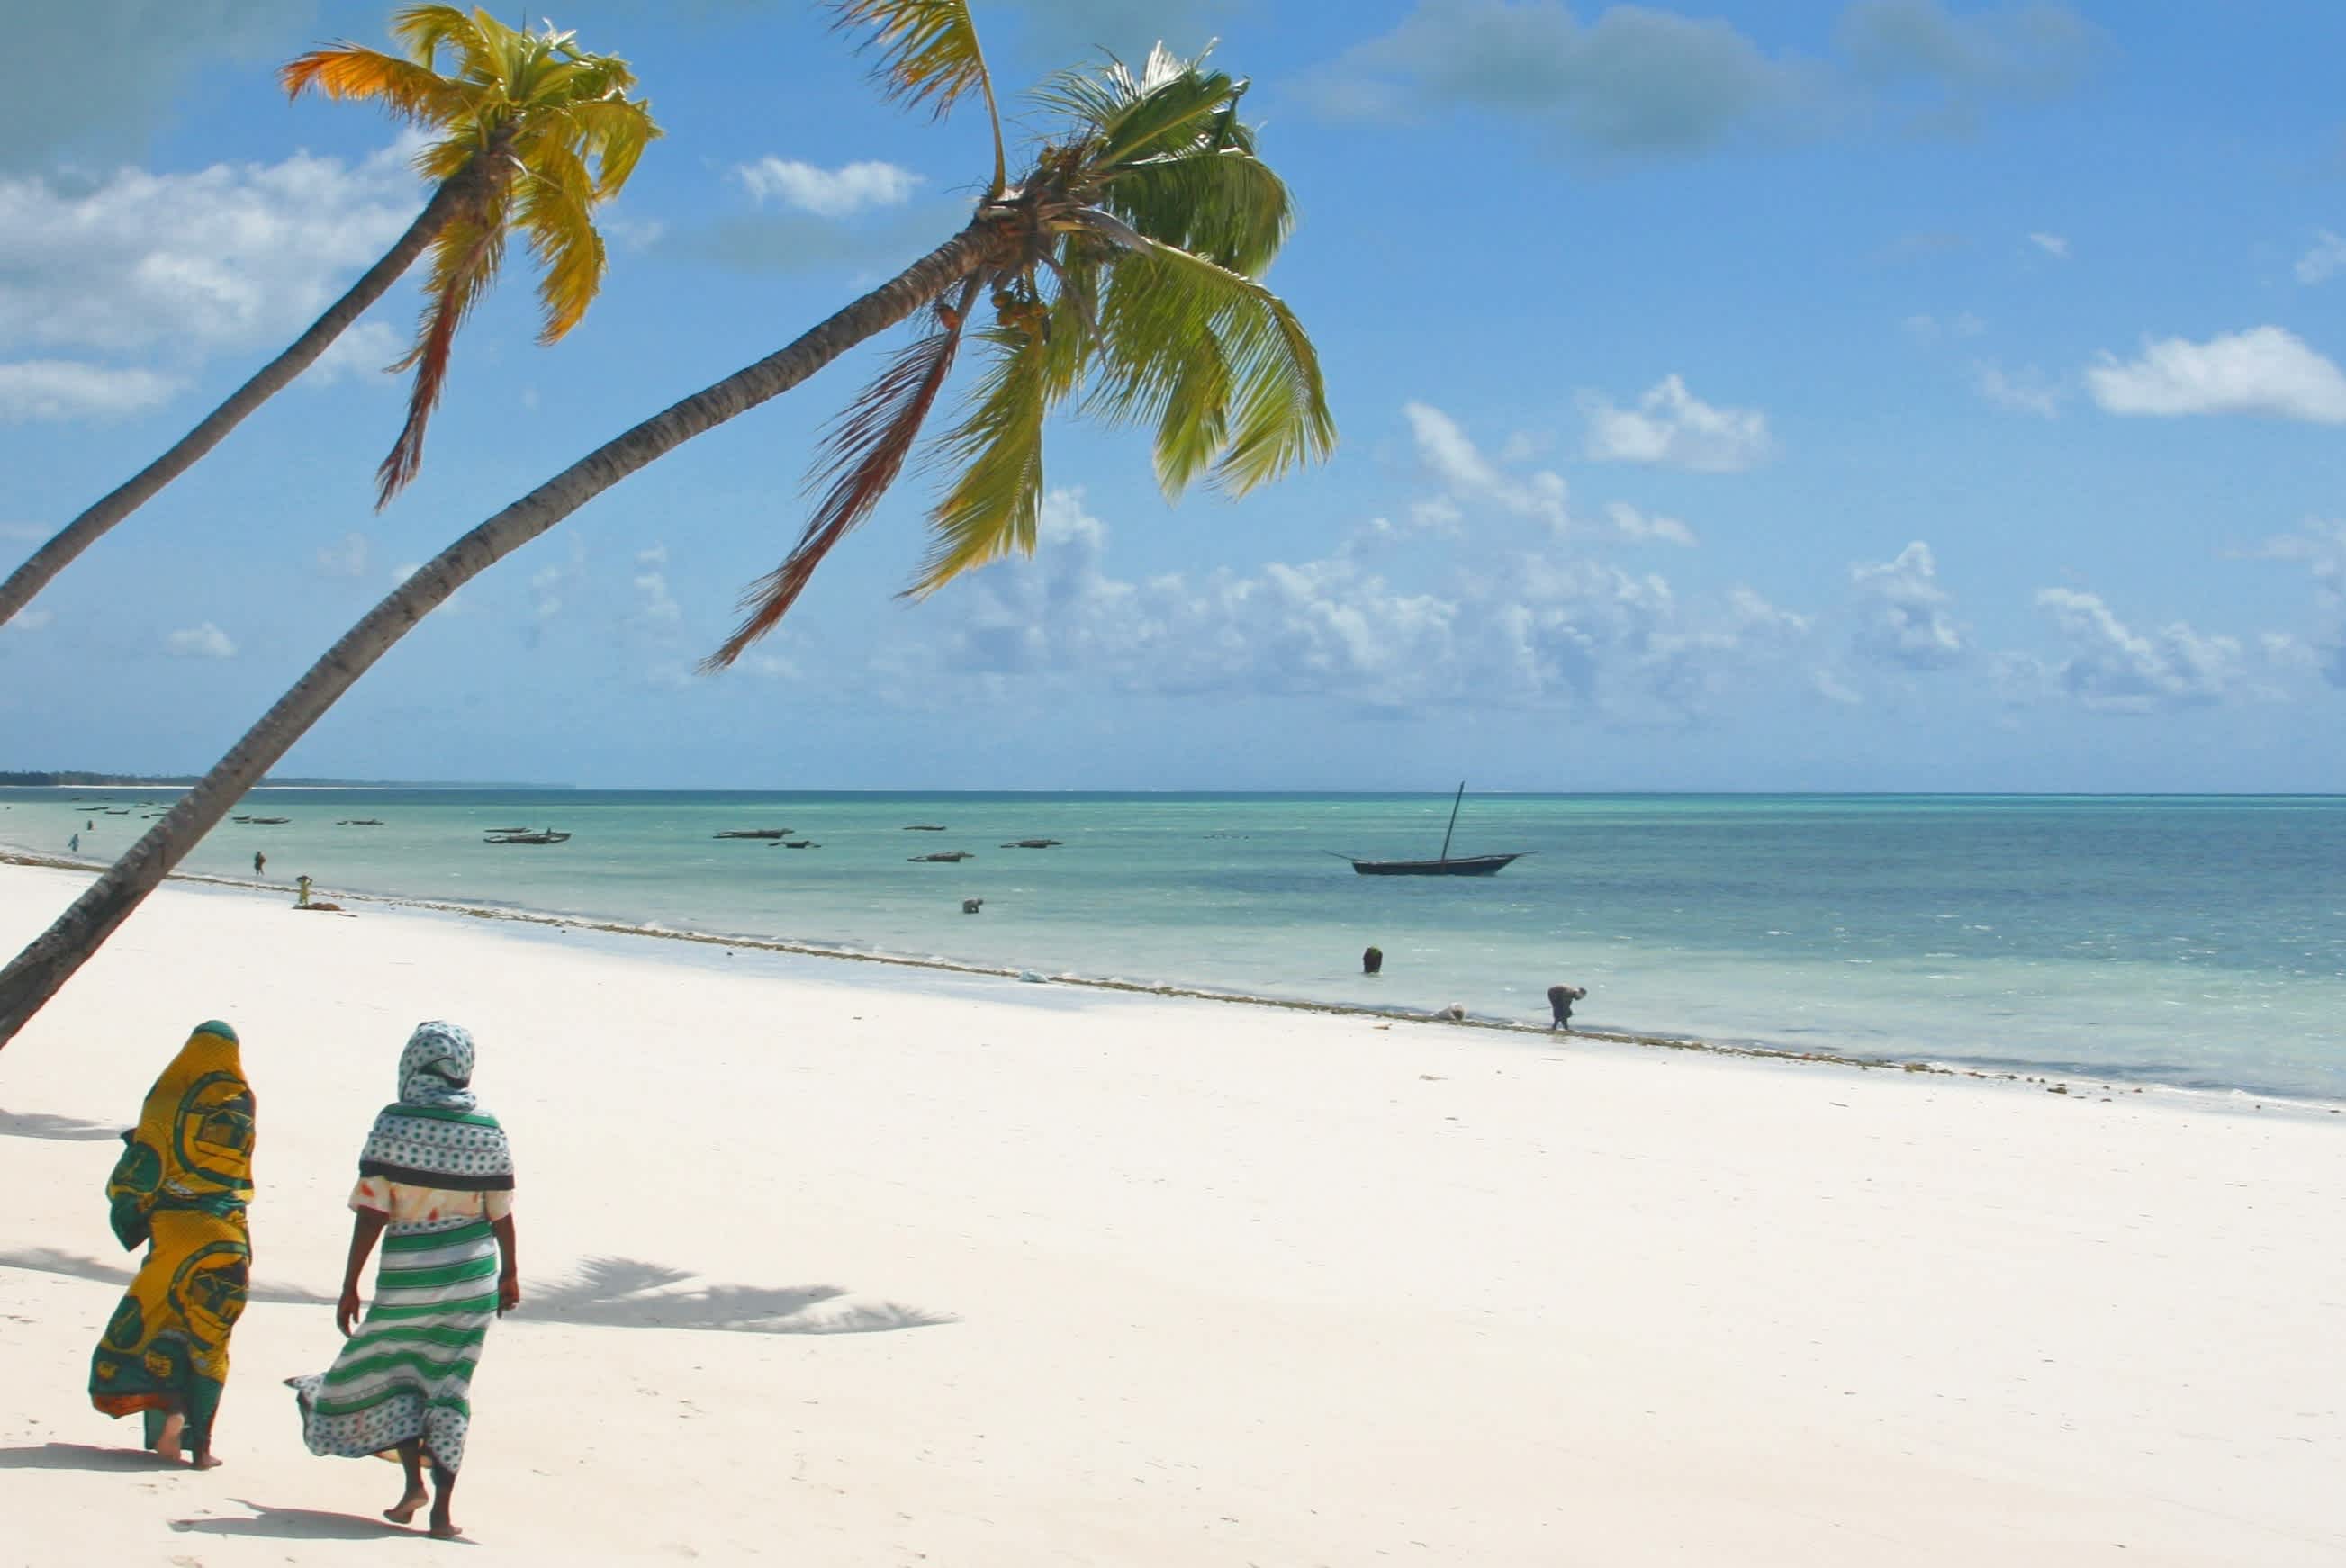 La plage sur l'île de Zanzibar avec une femme habillée de manière traditionnelle, Tanzanie.